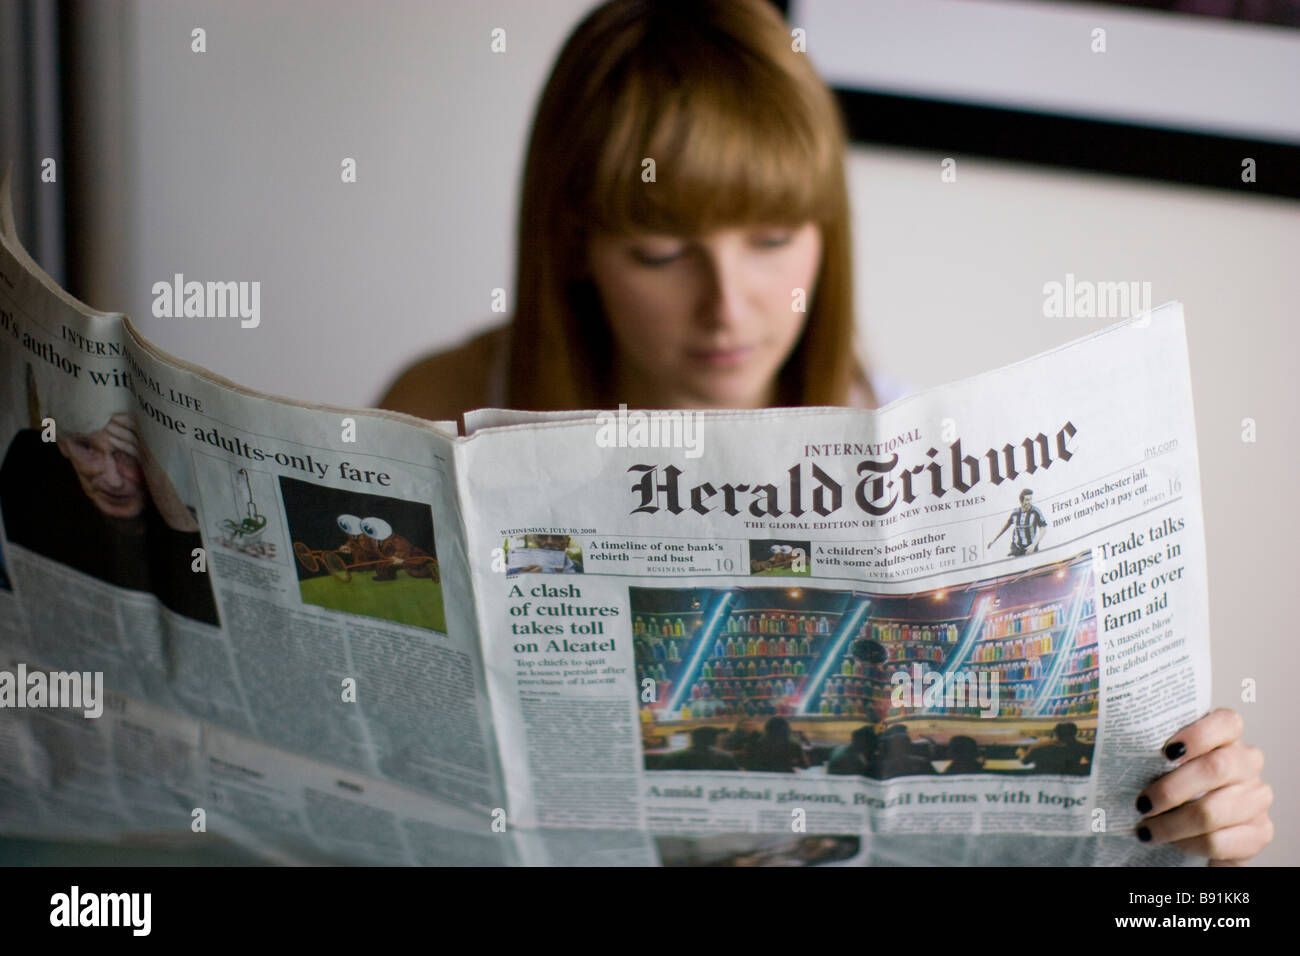 Jeune femme lisant un journal quotidien le Herald Tribune usa journal américain Banque D'Images